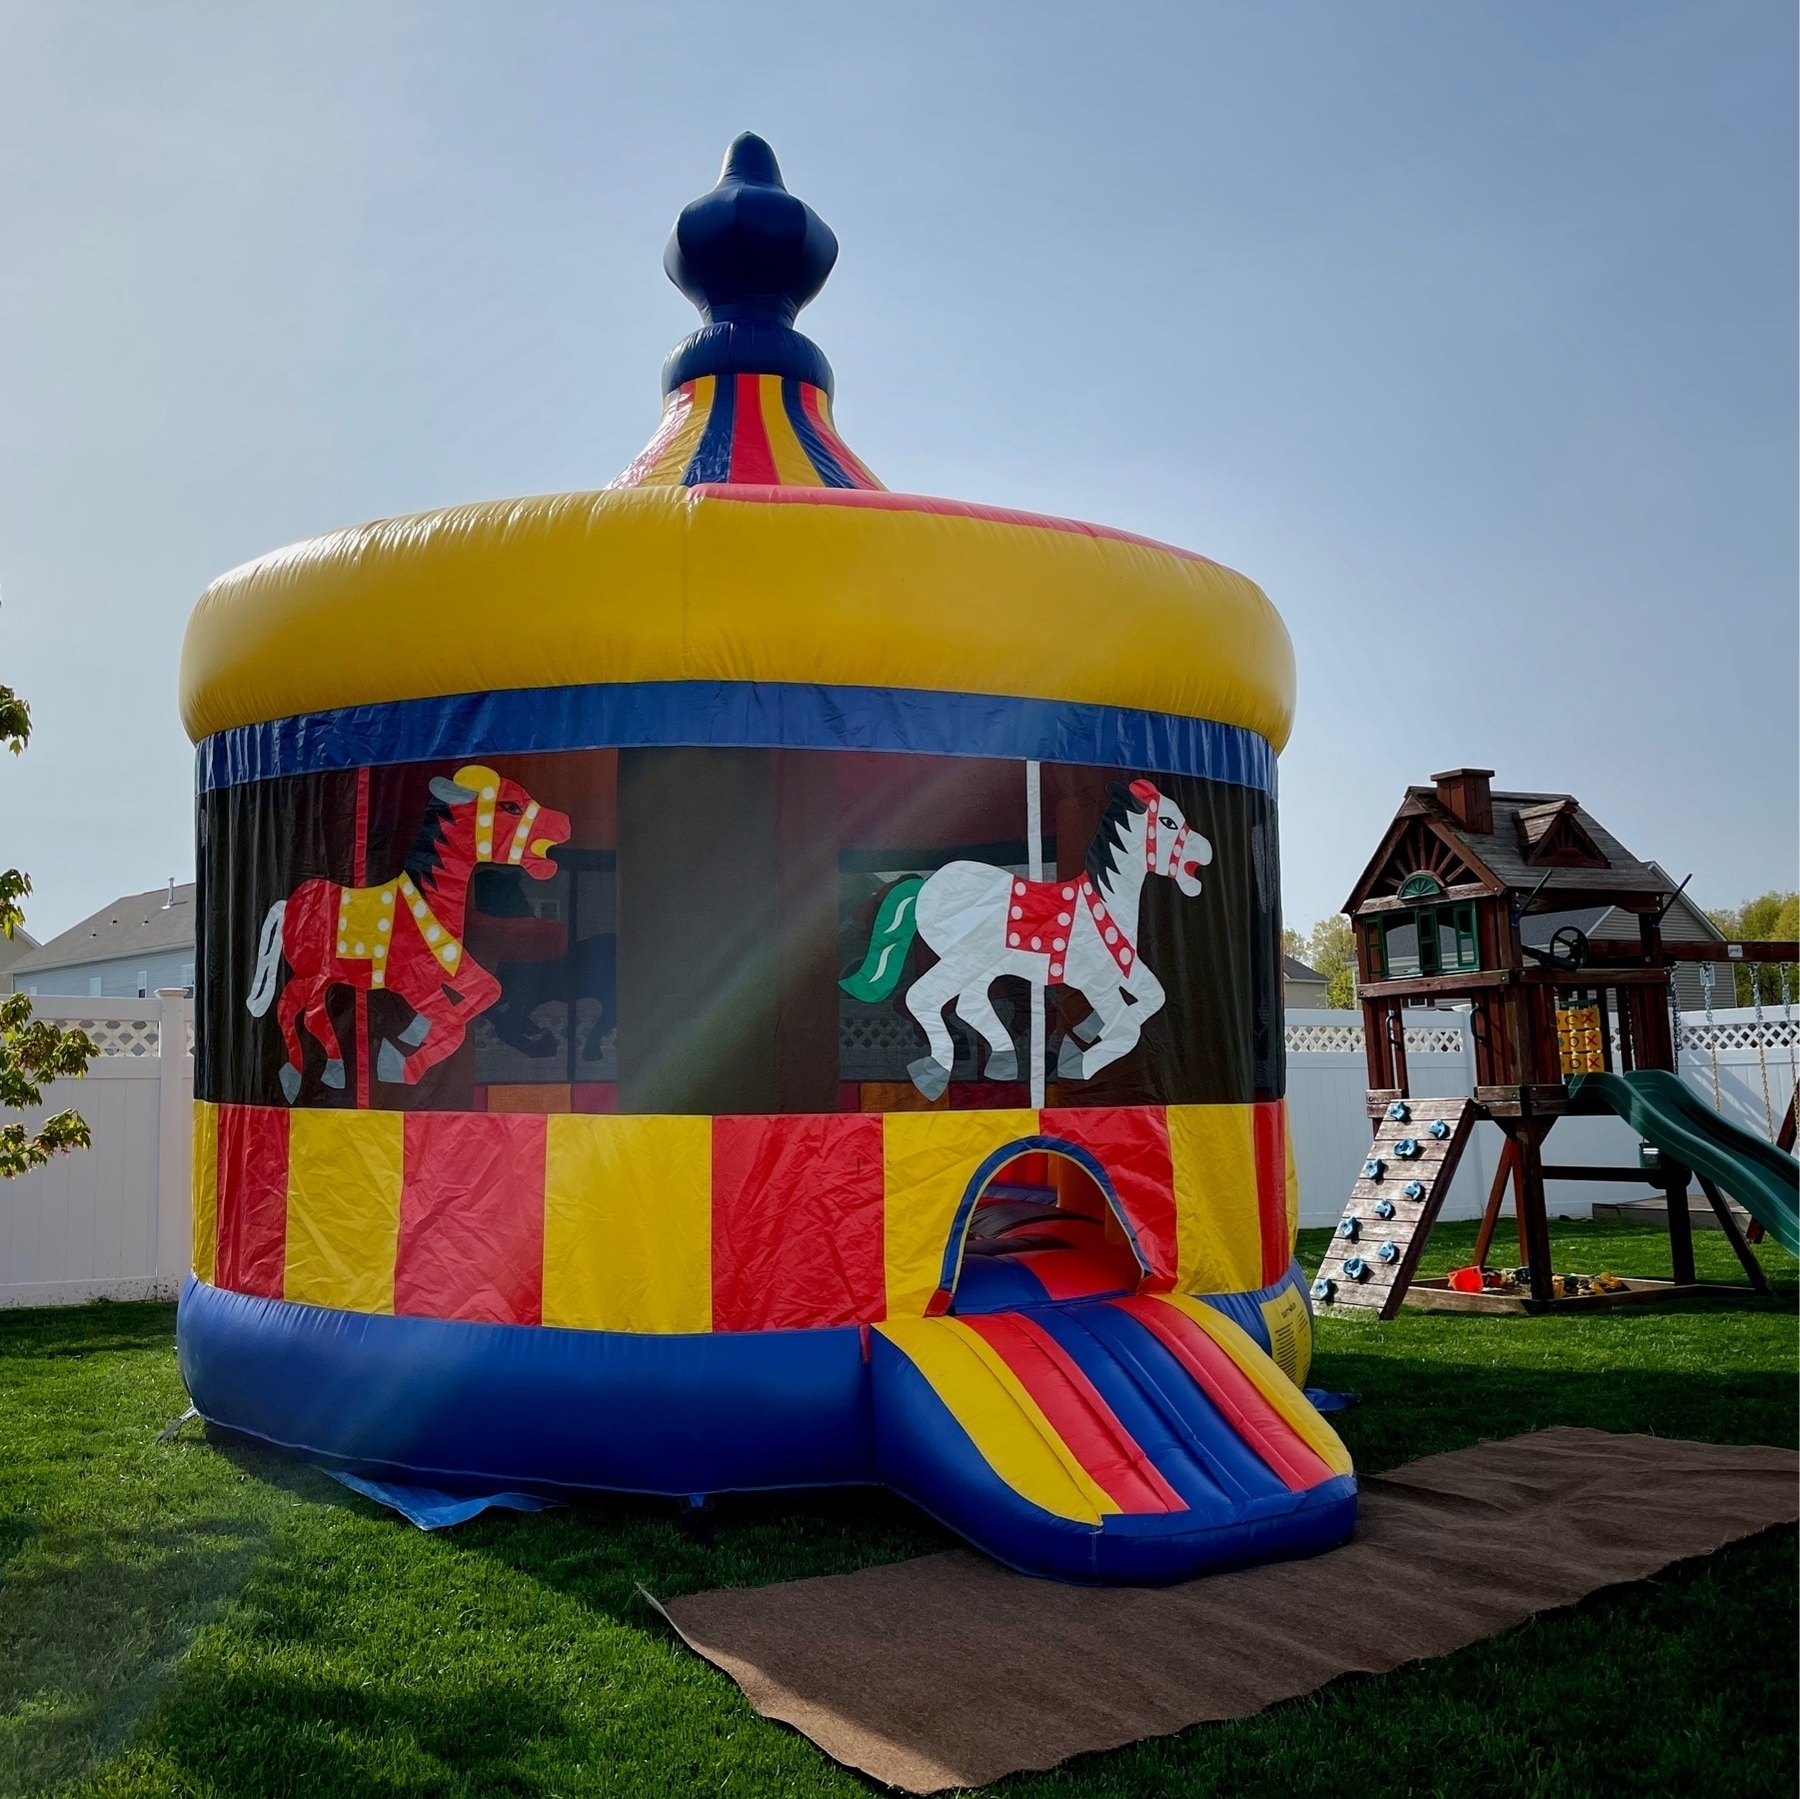 bouncy house